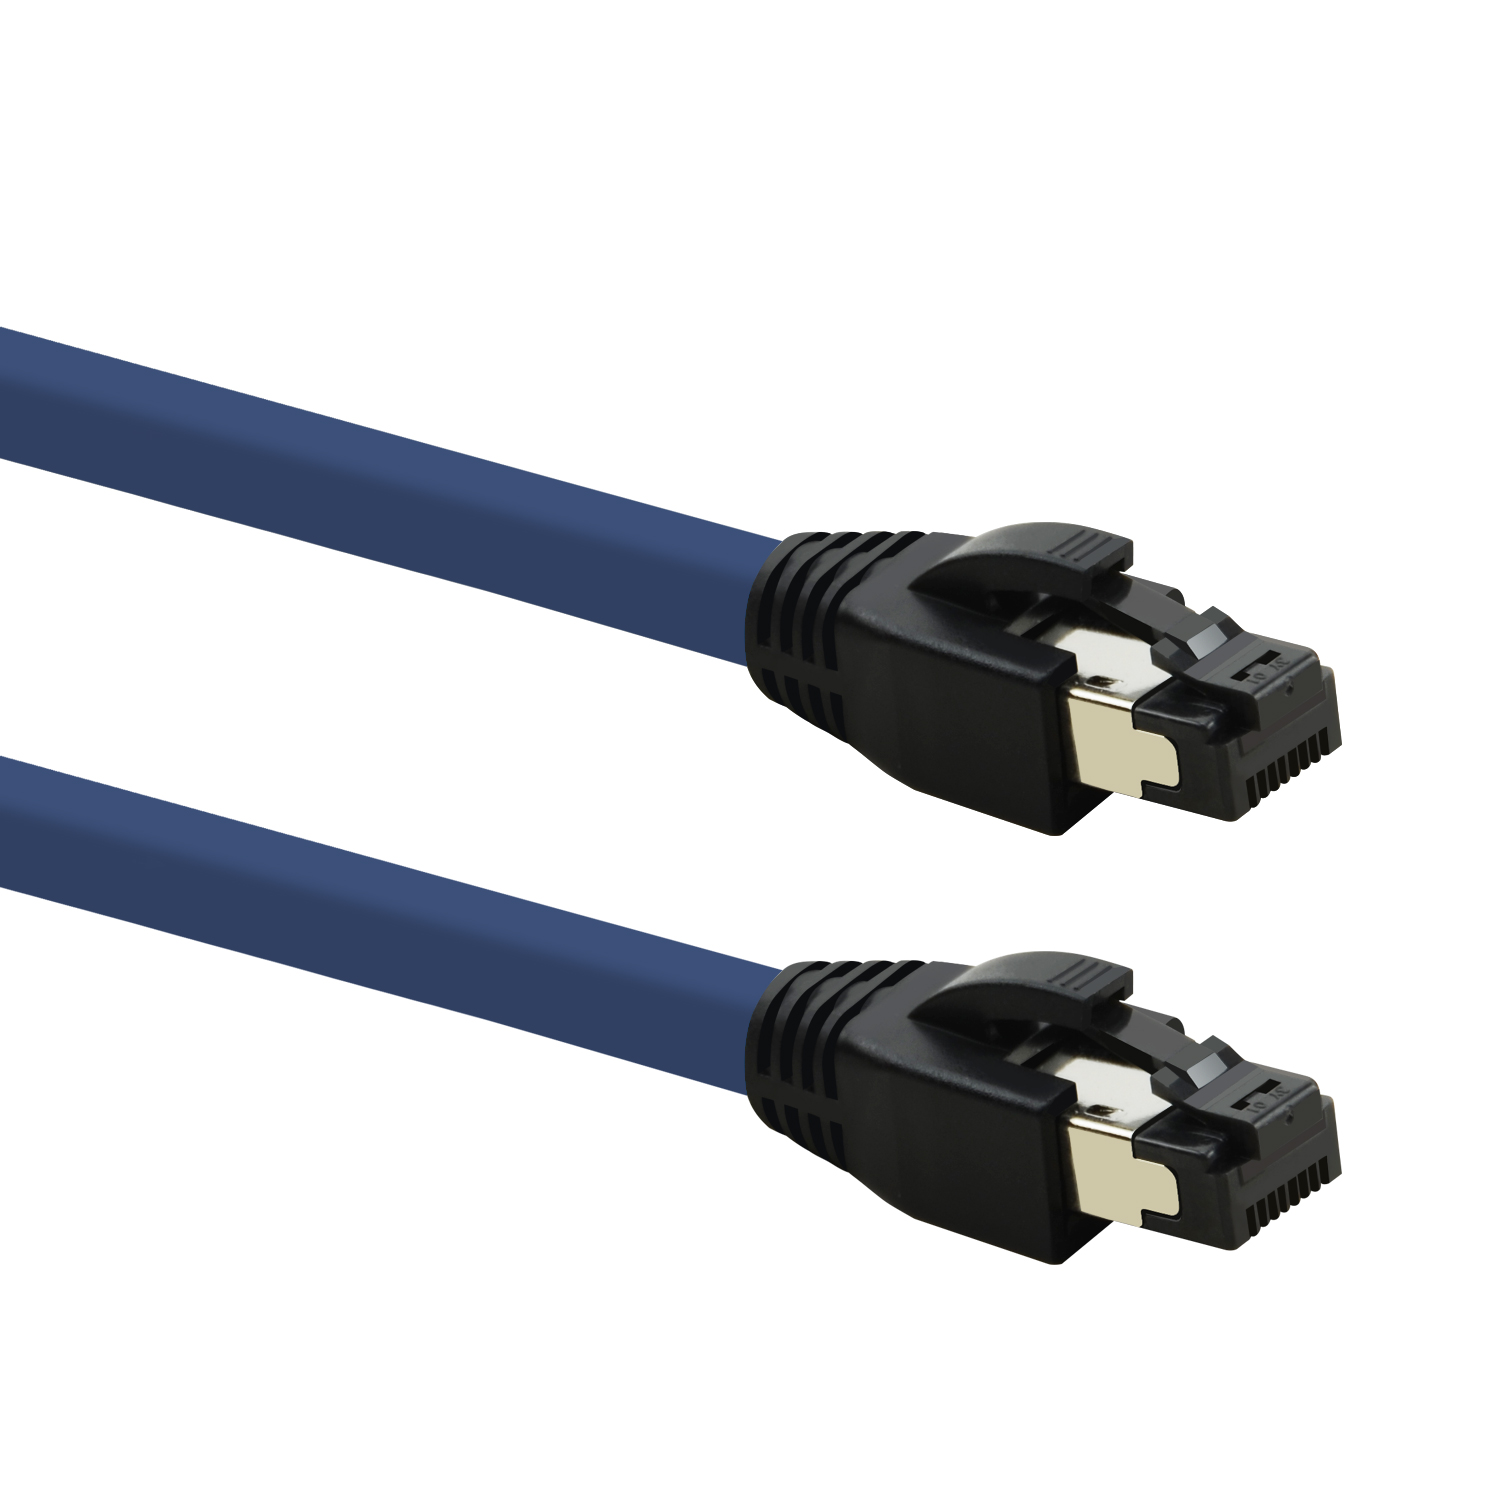 TPFNET 5er Pack 1,5m Patchkabel Netzwerkkabel m Netzwerkkabel, 1,5 / GBit, S/FTP blau, 40